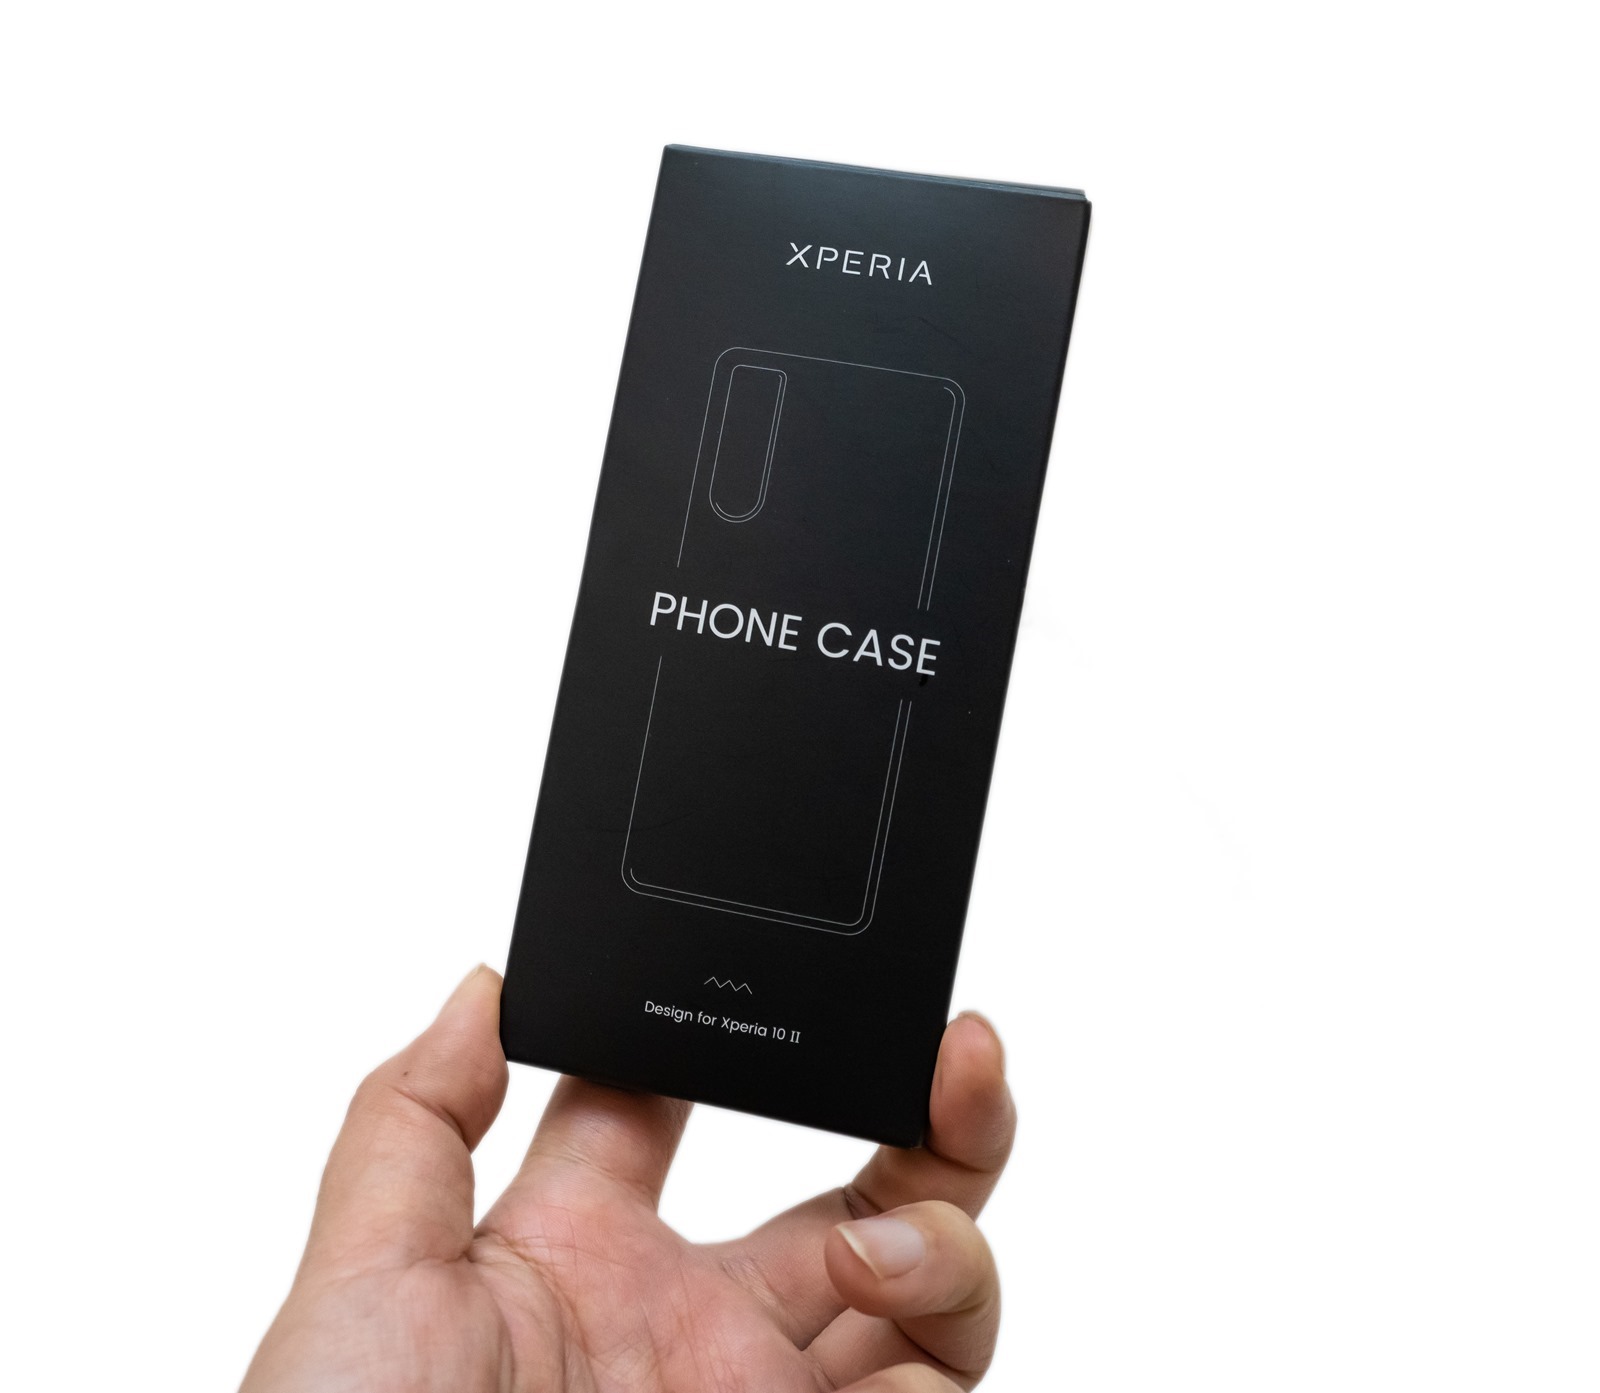 Sony Xperia 10 II 新機實測 (1) 中階防水生力軍開箱動手玩！還有首購禮不怕潮享樂一起看！ @3C 達人廖阿輝